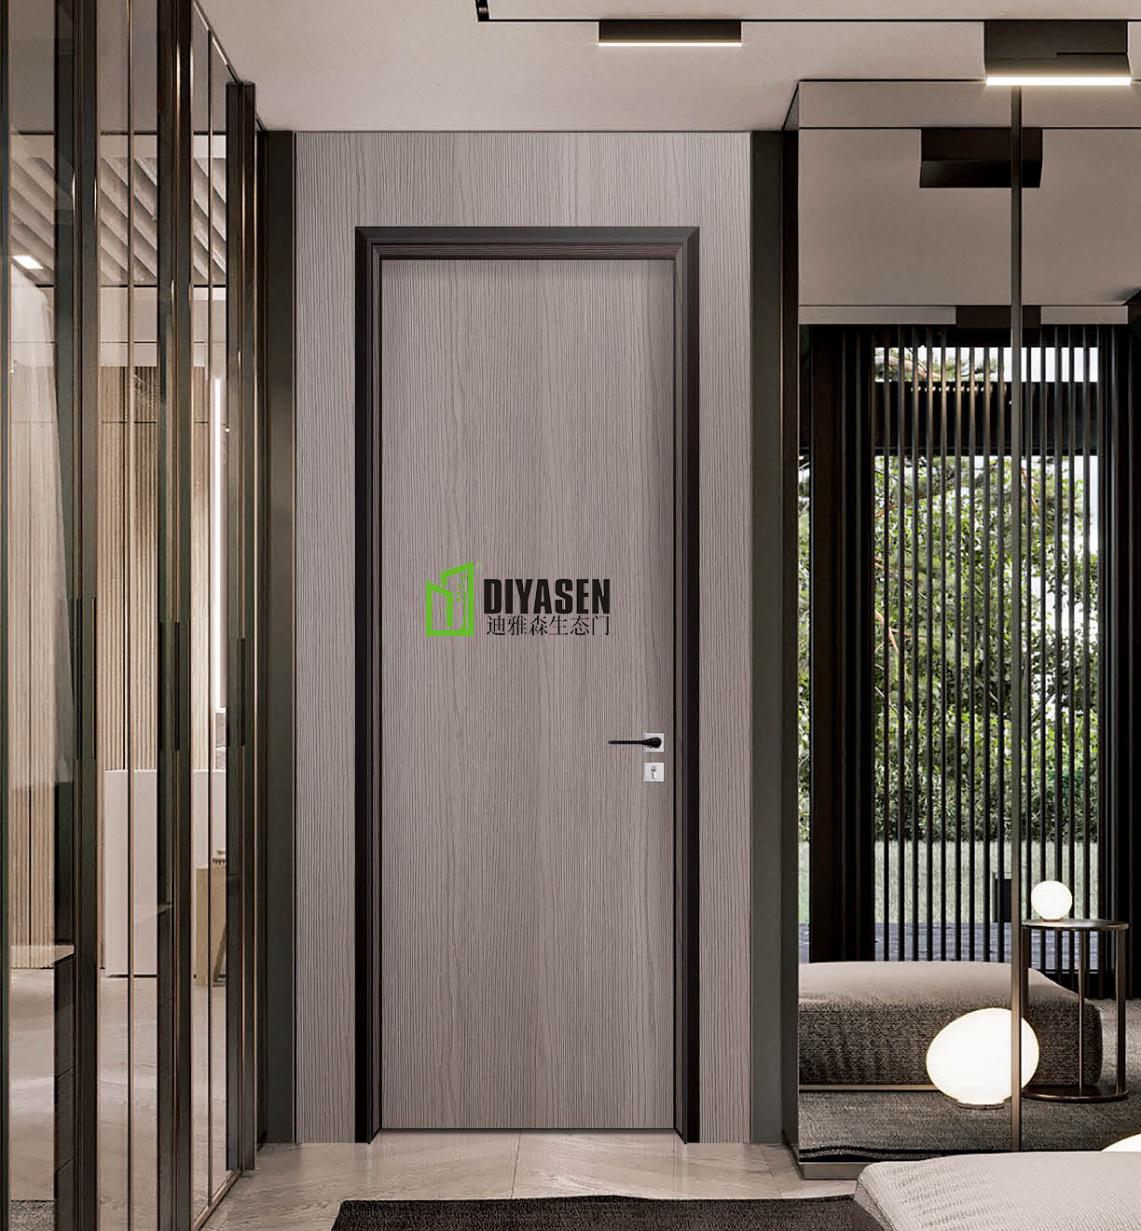 迪雅森铝木生态门|做健康环保的室内门